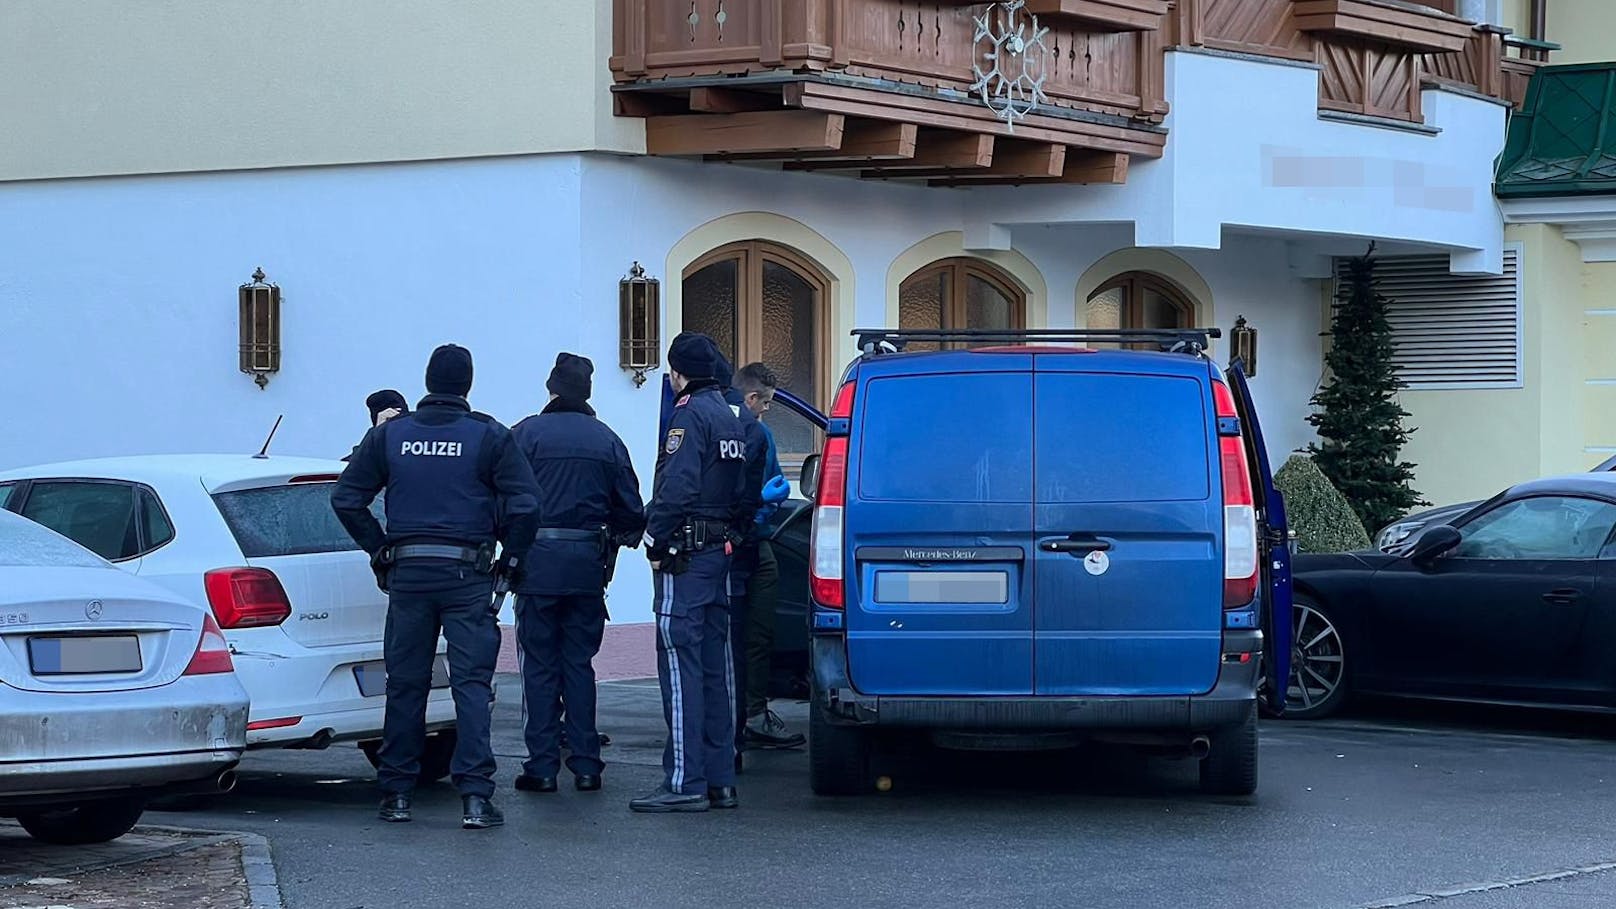 13 Flüchtlinge in Klein-Lkw – Schlepper (19) verhaftet